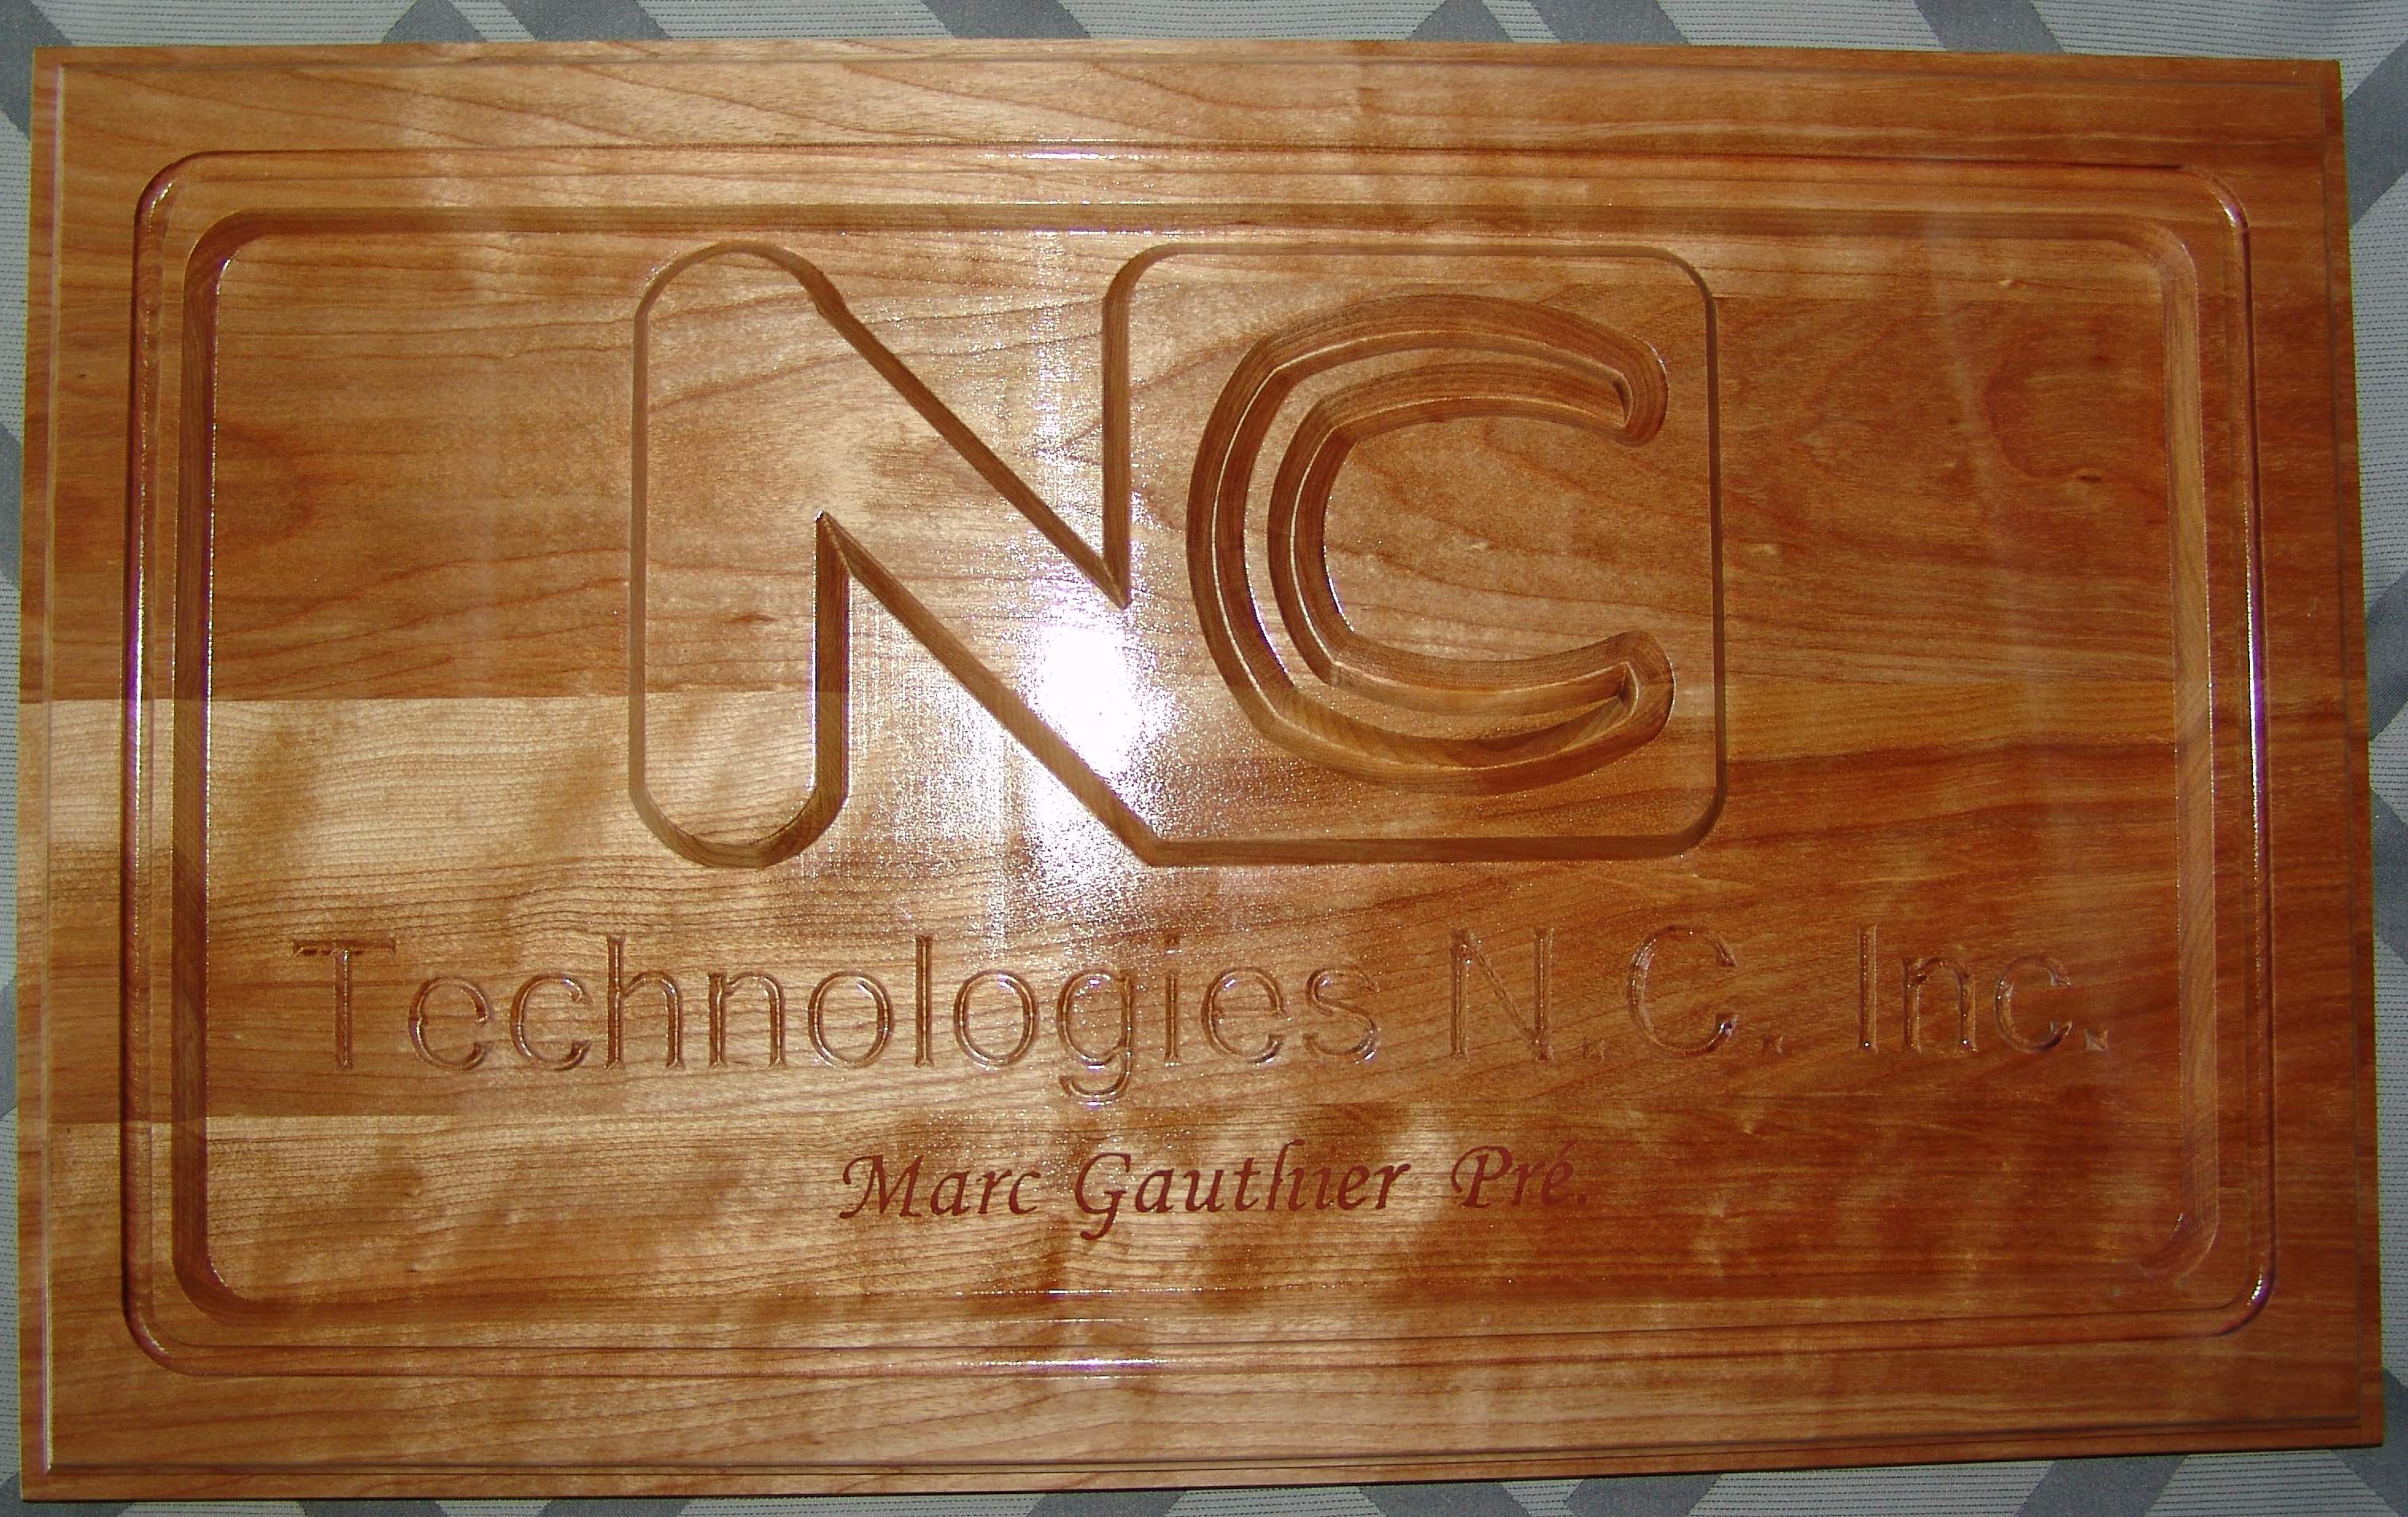 N.C.Technogies1